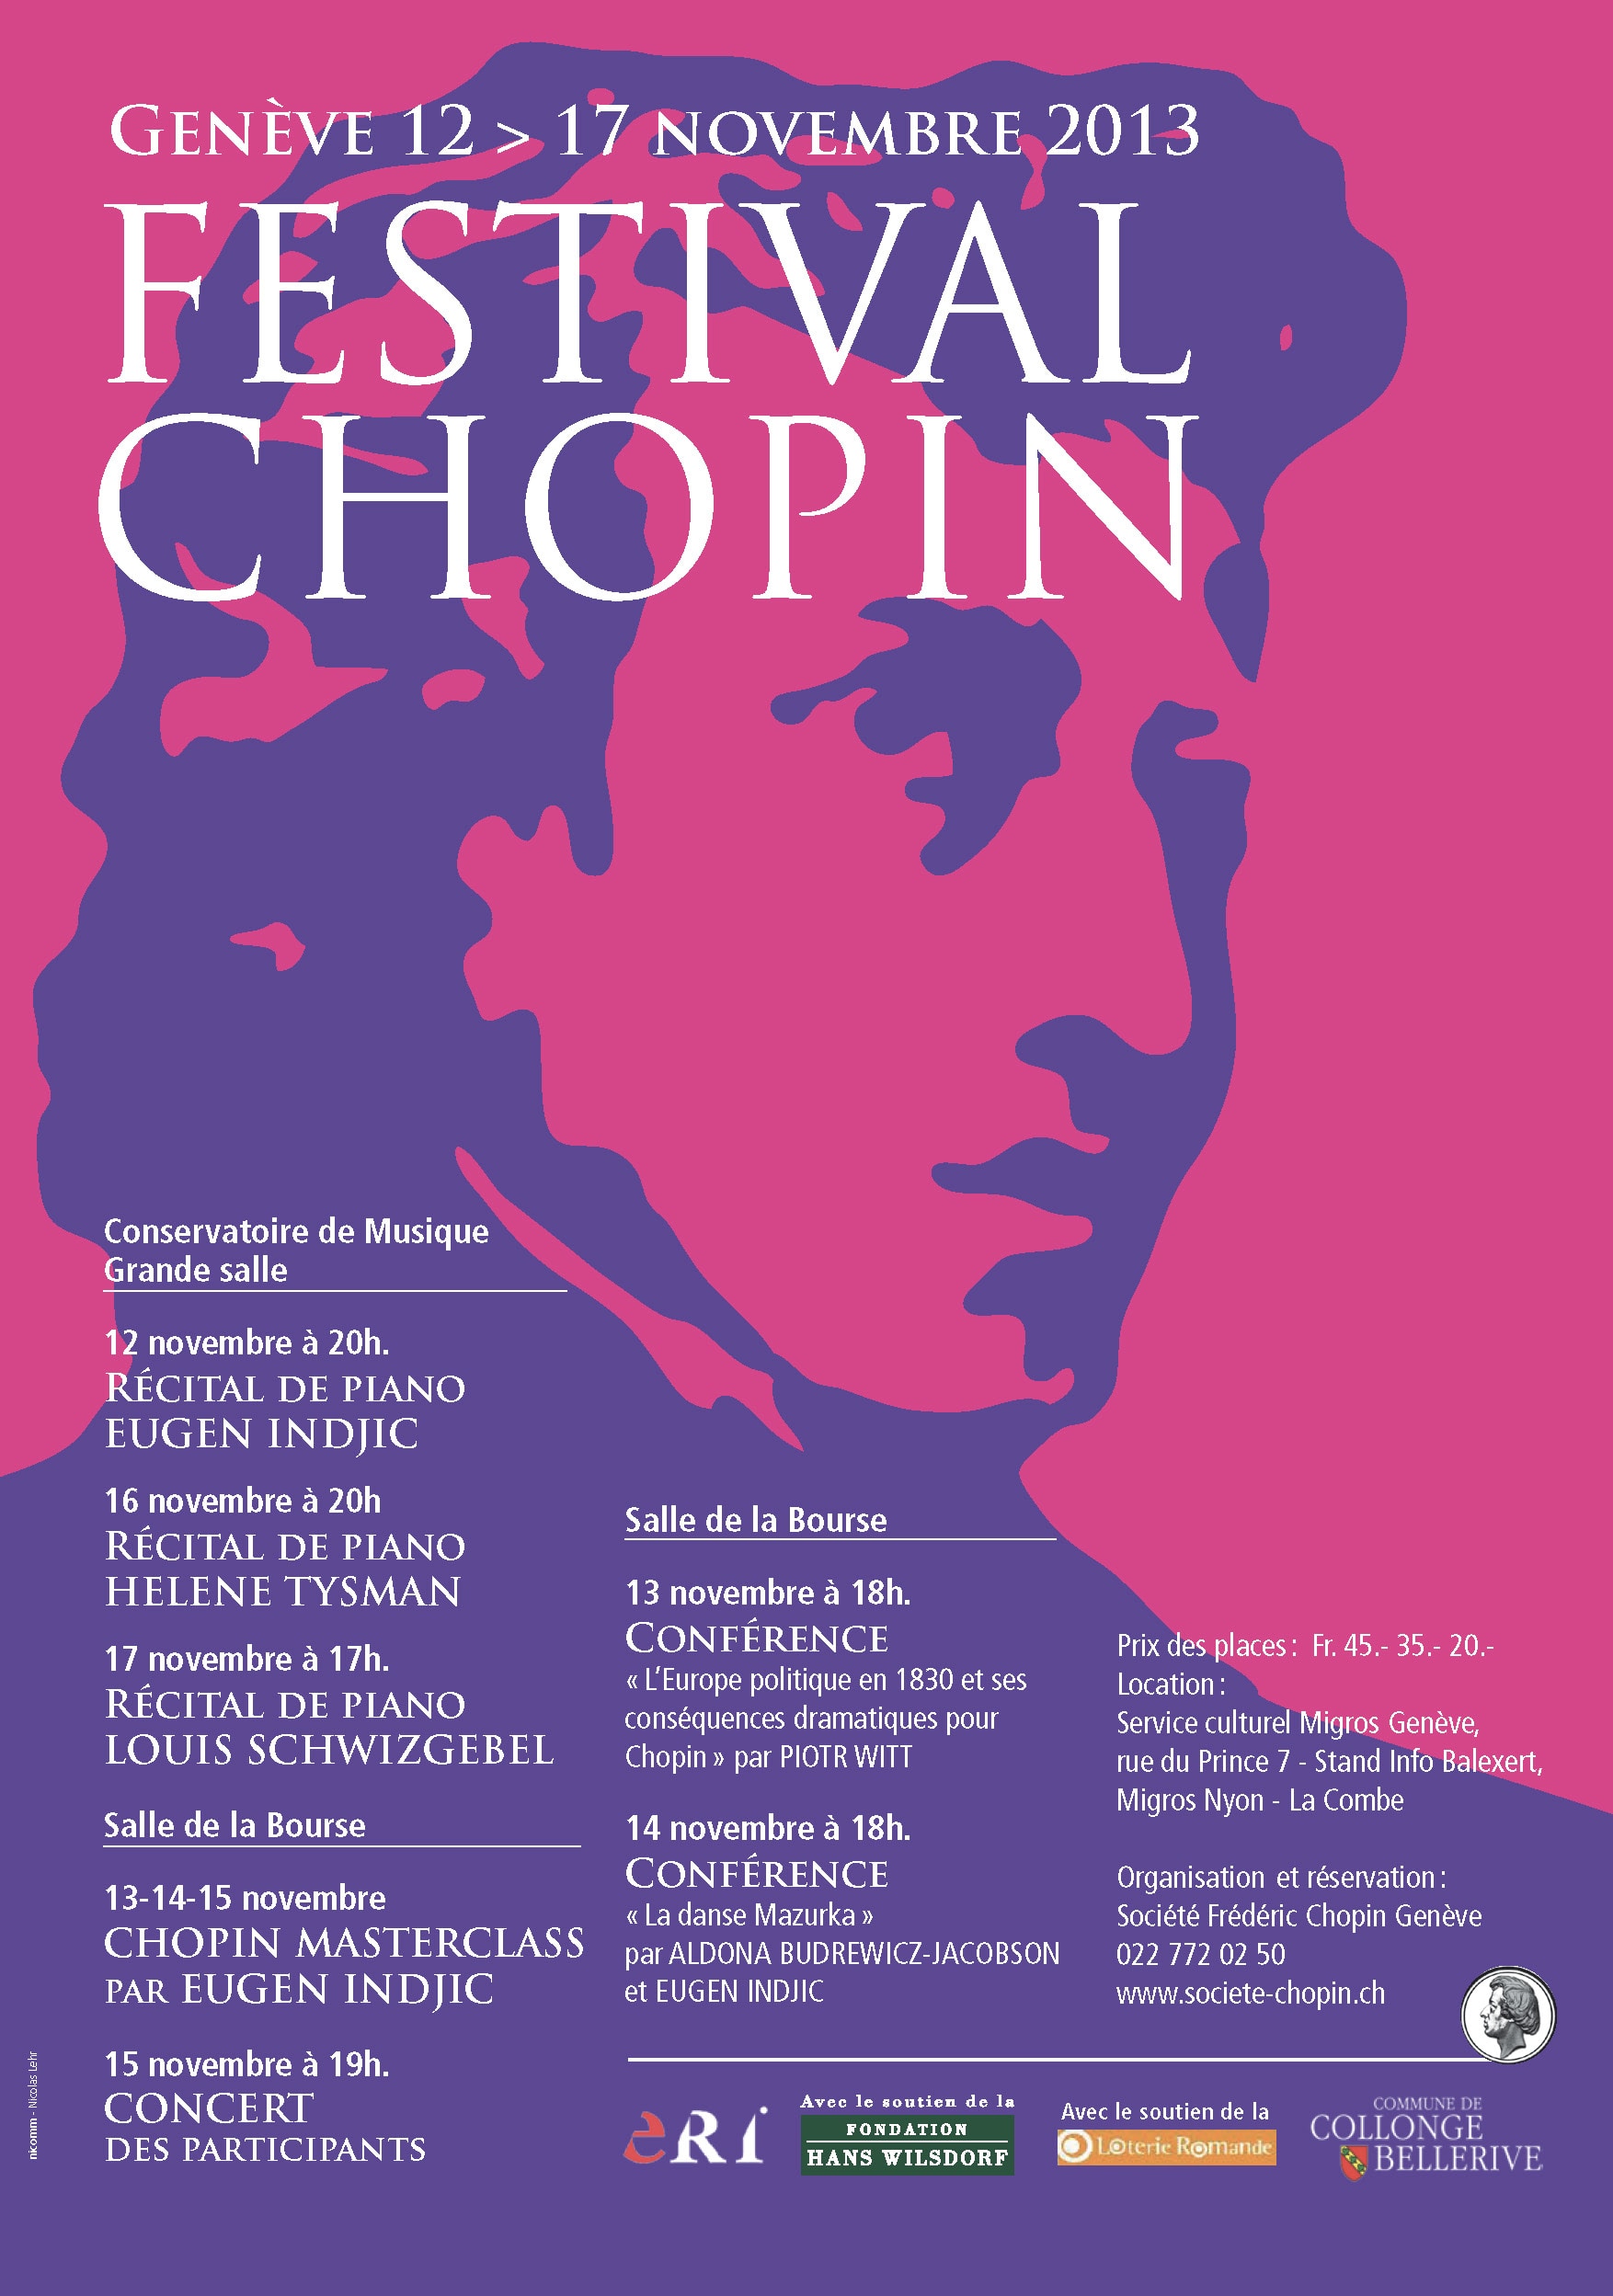 Festiwal Chopinowski w Genewie 2013